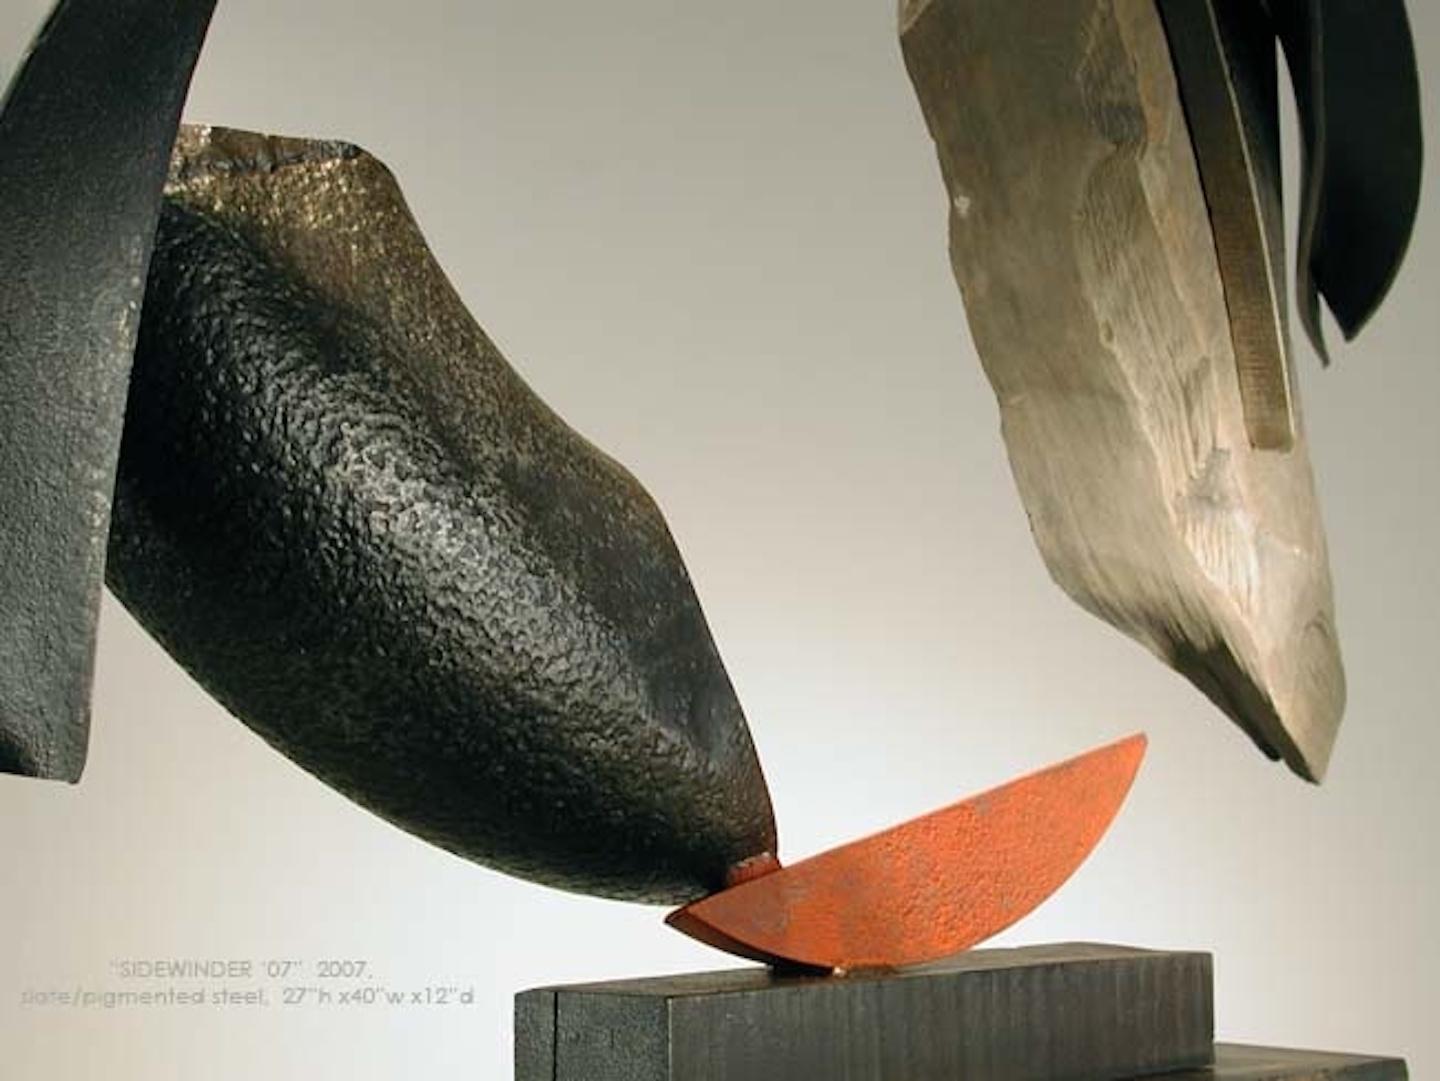 Sidewinder '07 - Sculpture by John Van Alstine